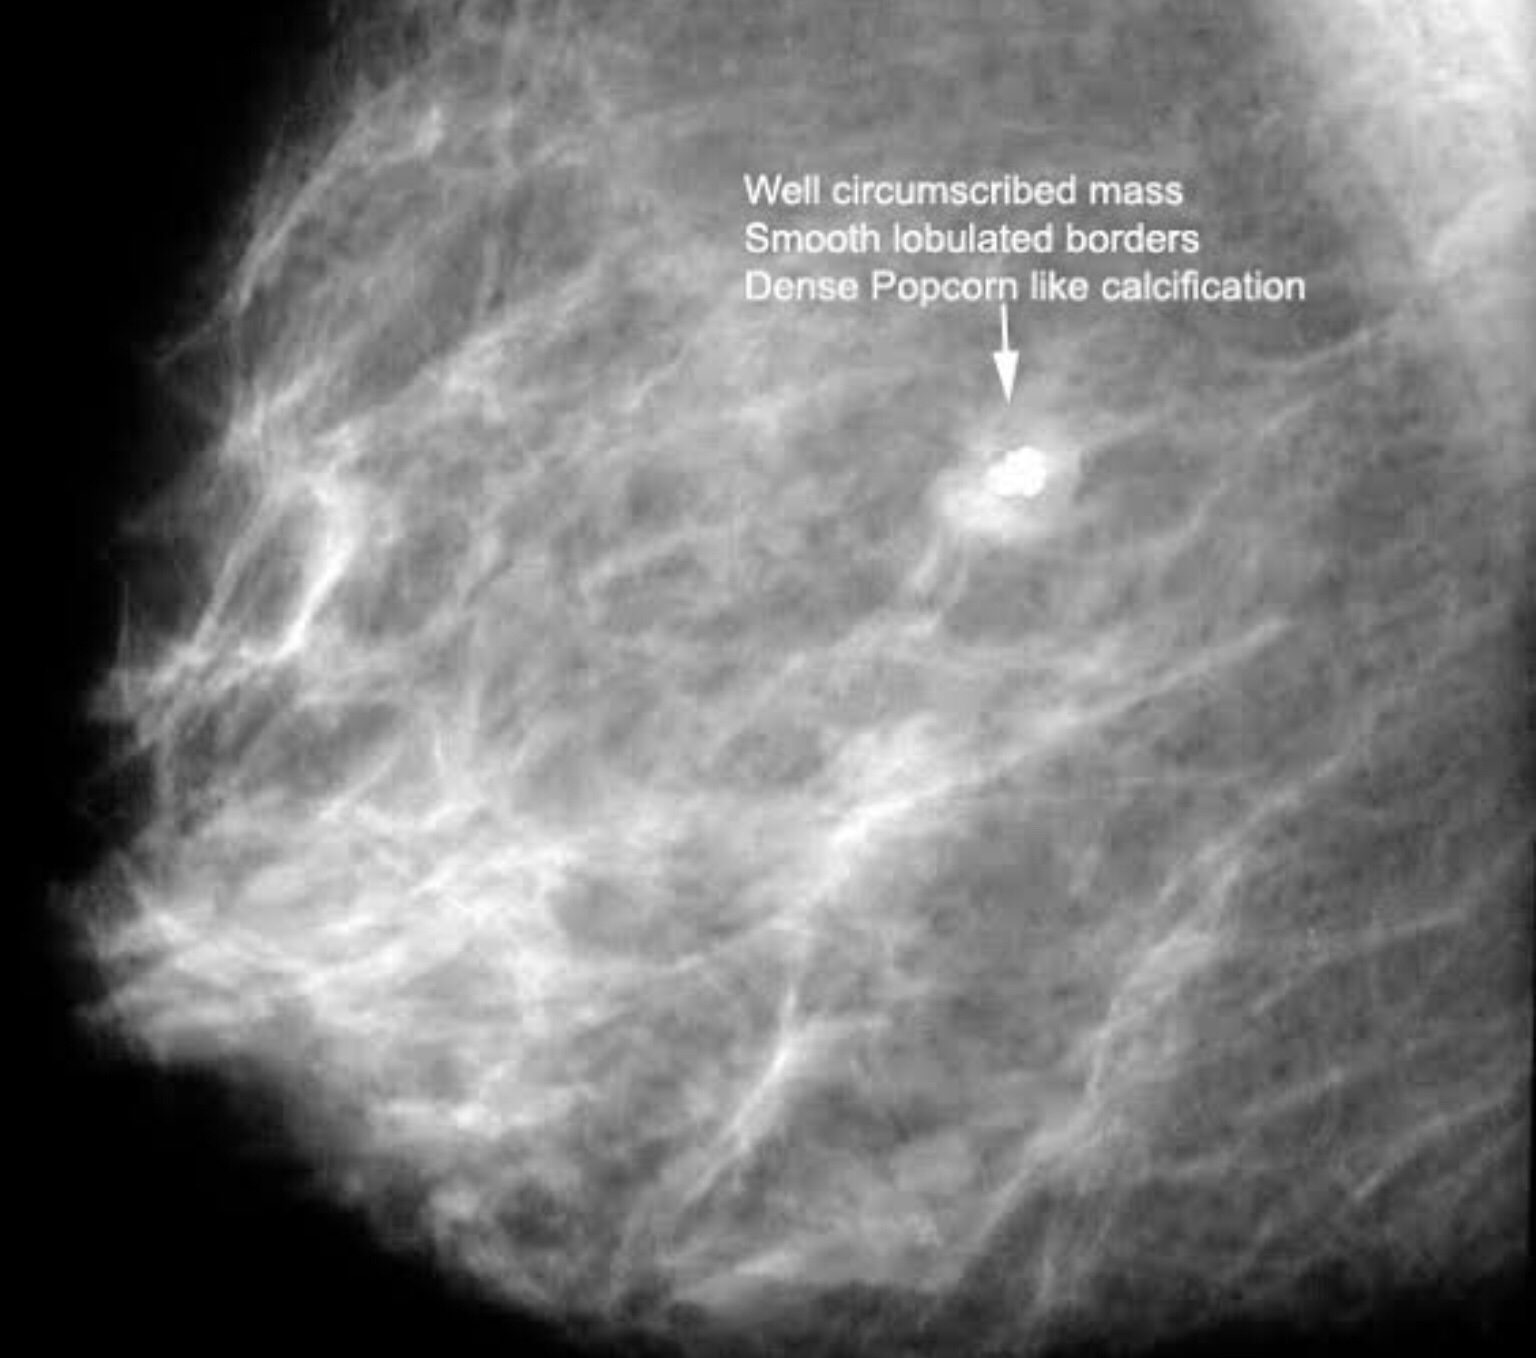 фиброаденома молочной железы маммография фото